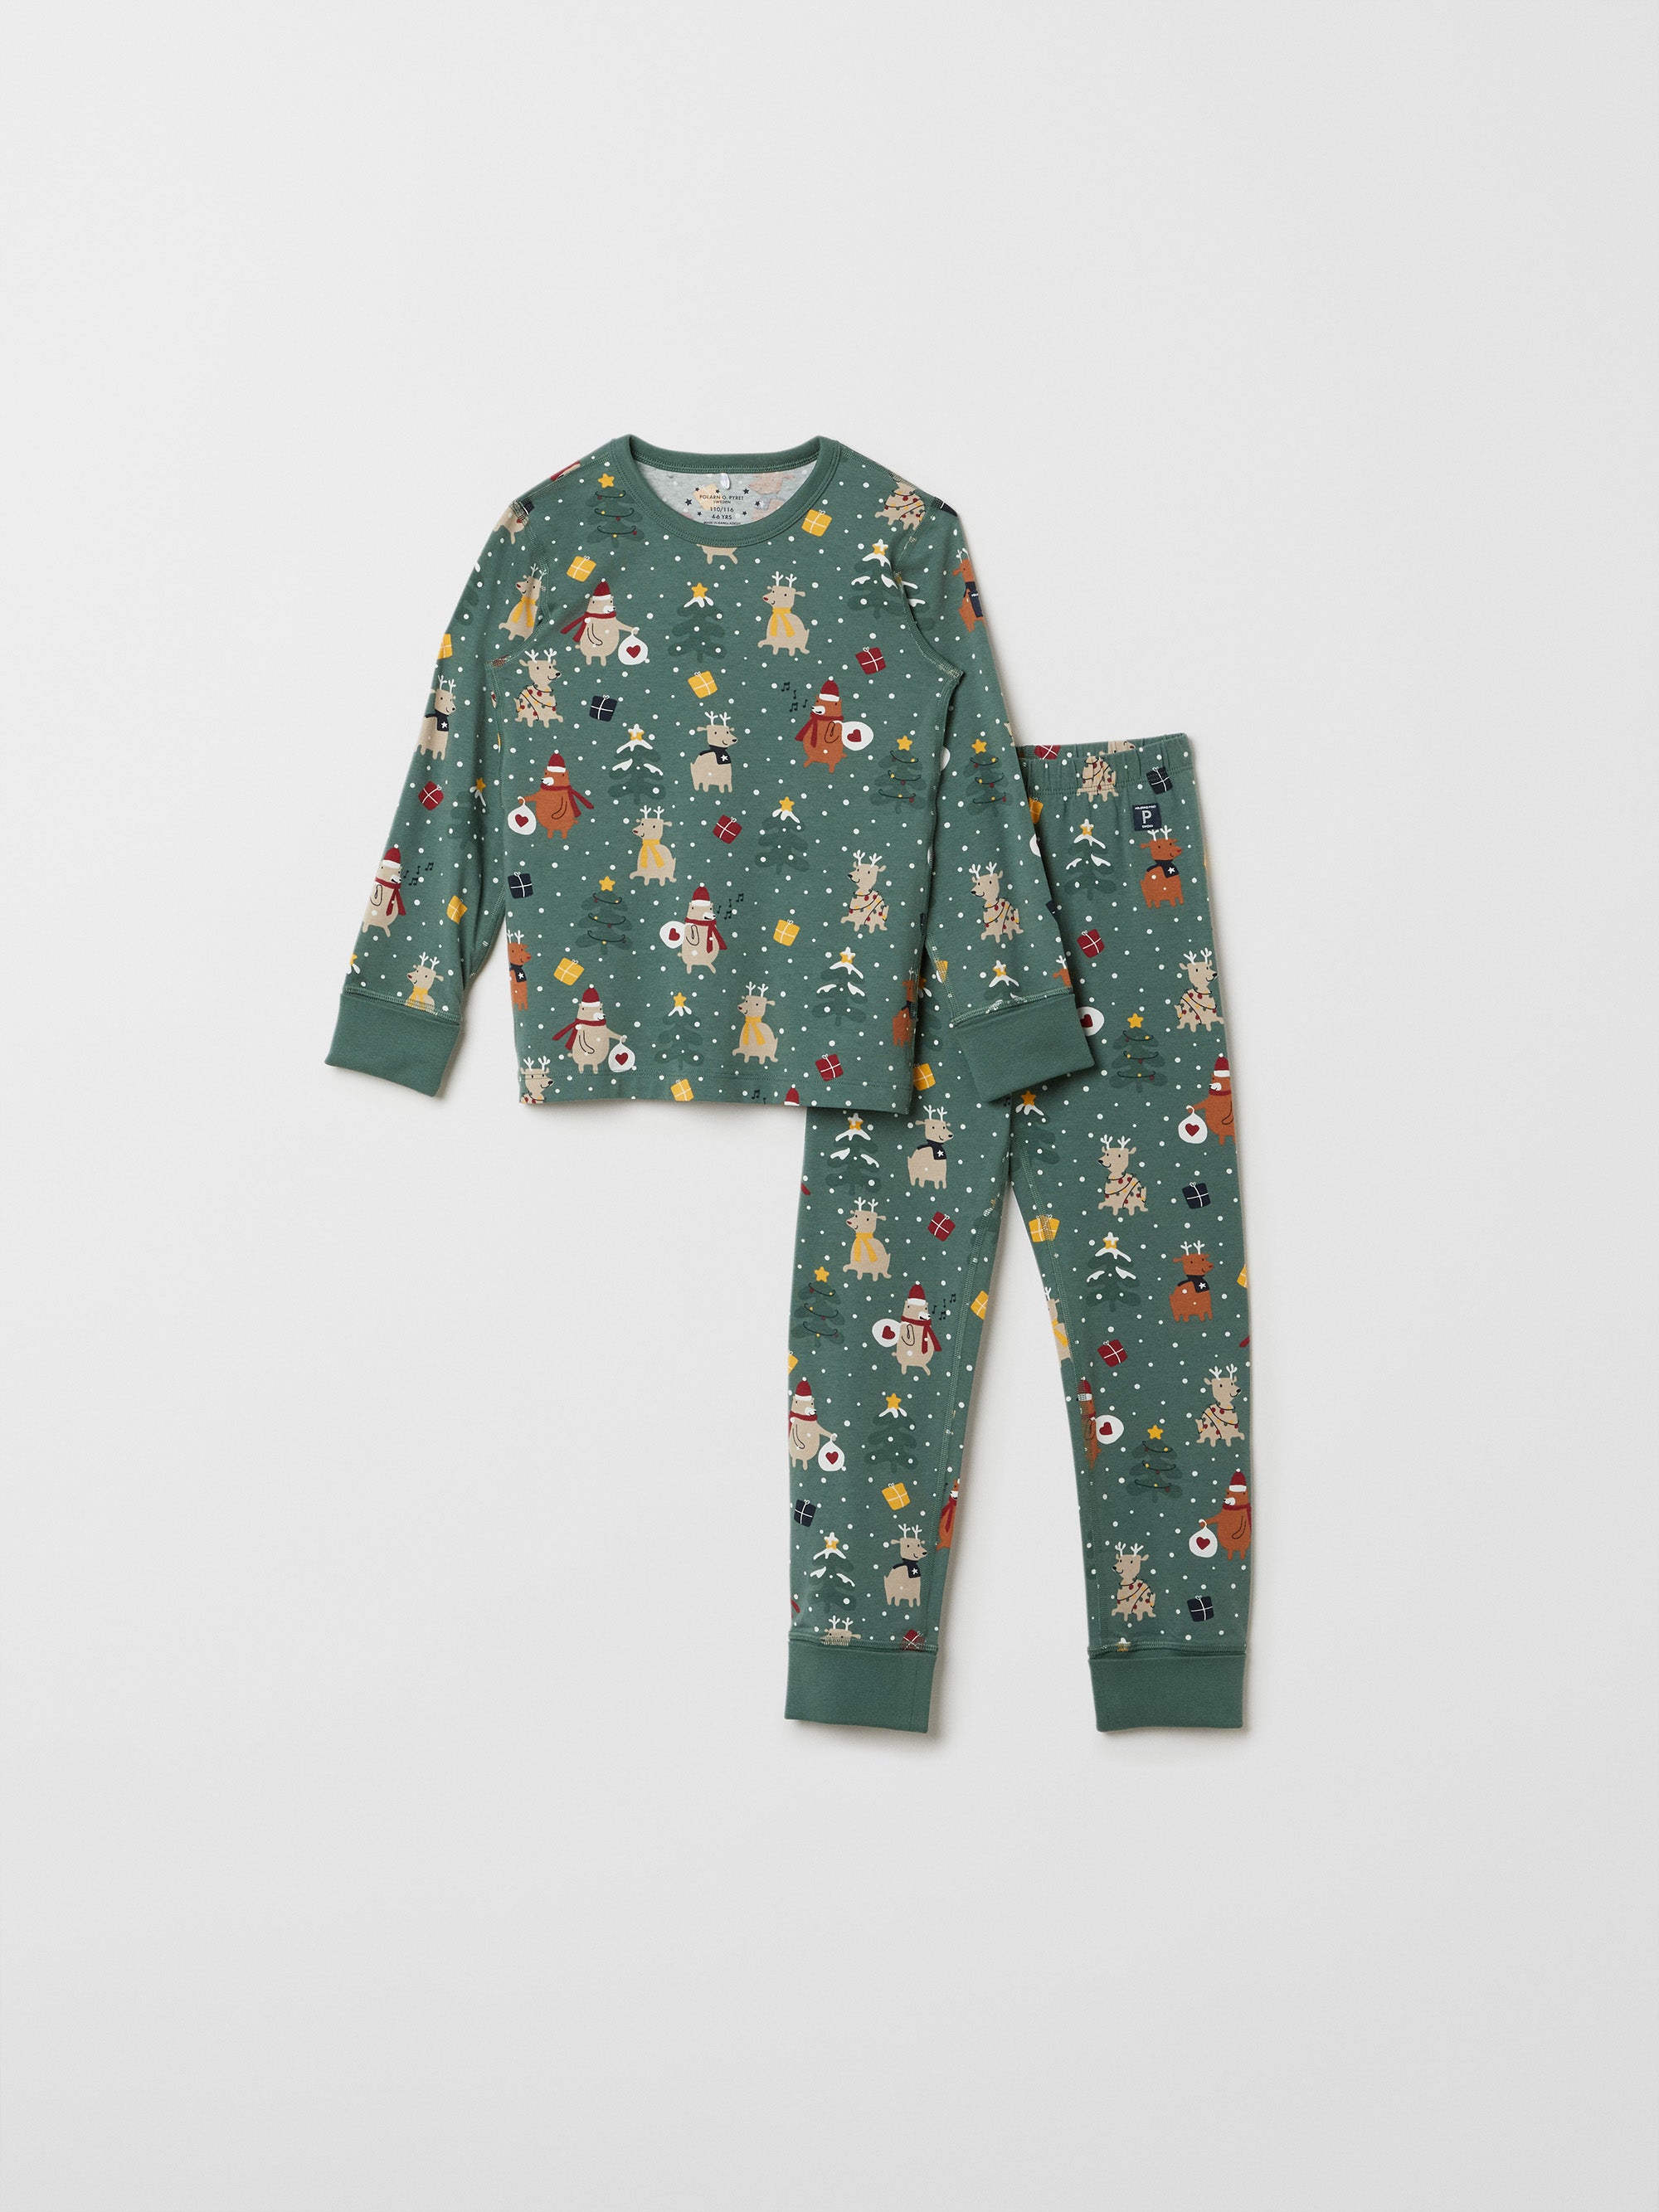 Christmas Print Kids Pyjamas